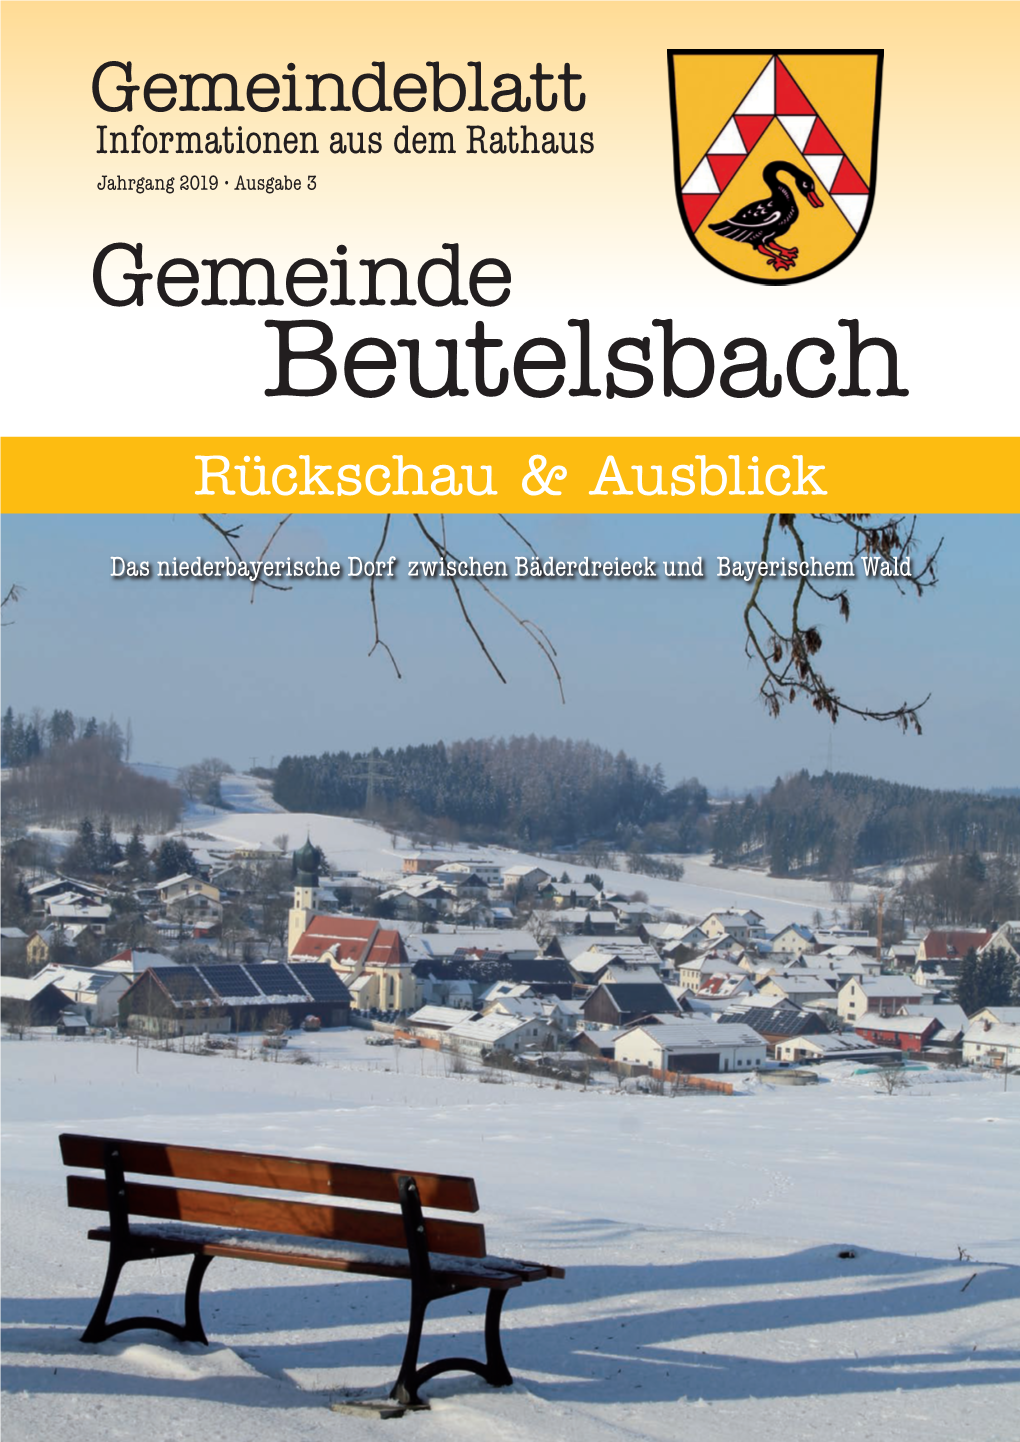 Gemeindeblatt Informationen Aus Dem Rathaus Jahrgang 2019 • Ausgabe 3 Gemeinde Beutelsbach Rückschau & Ausblick